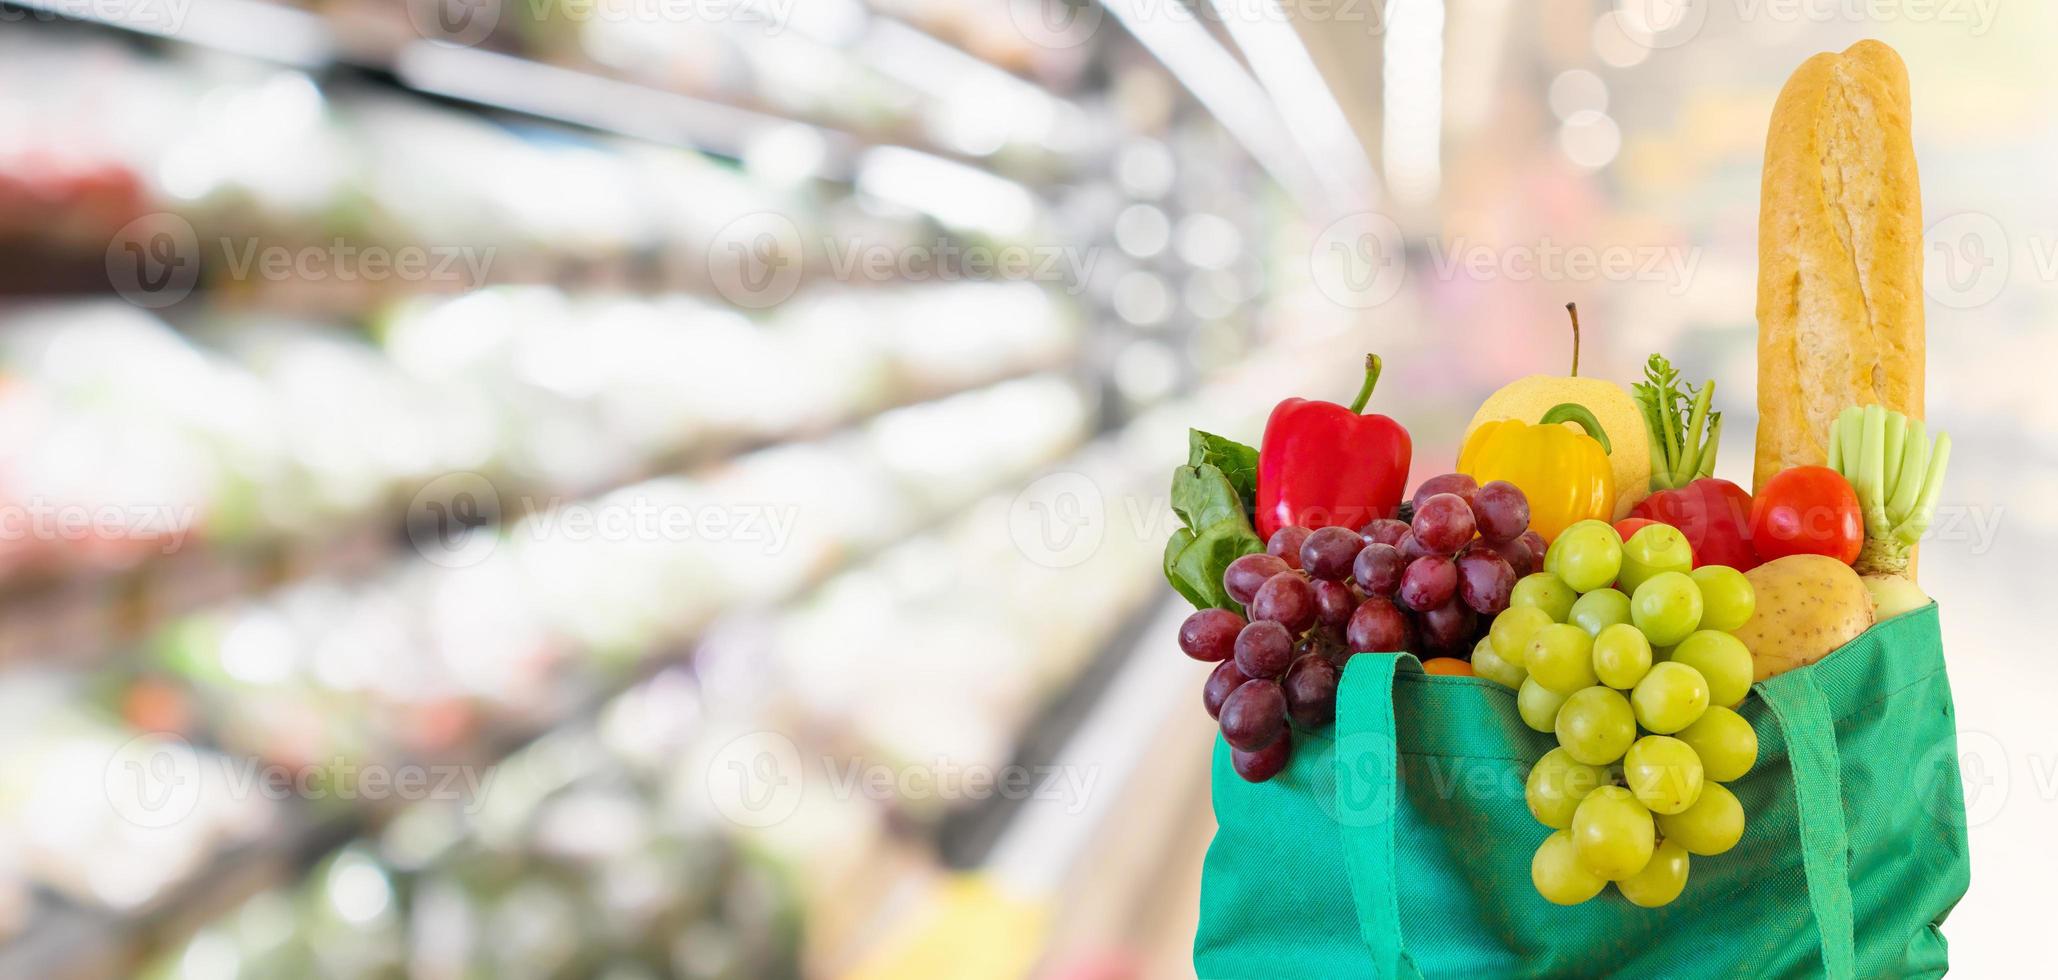 frutas e legumes frescos em sacola de compras verde reutilizável com supermercado desfocado fundo desfocado com luz bokeh foto